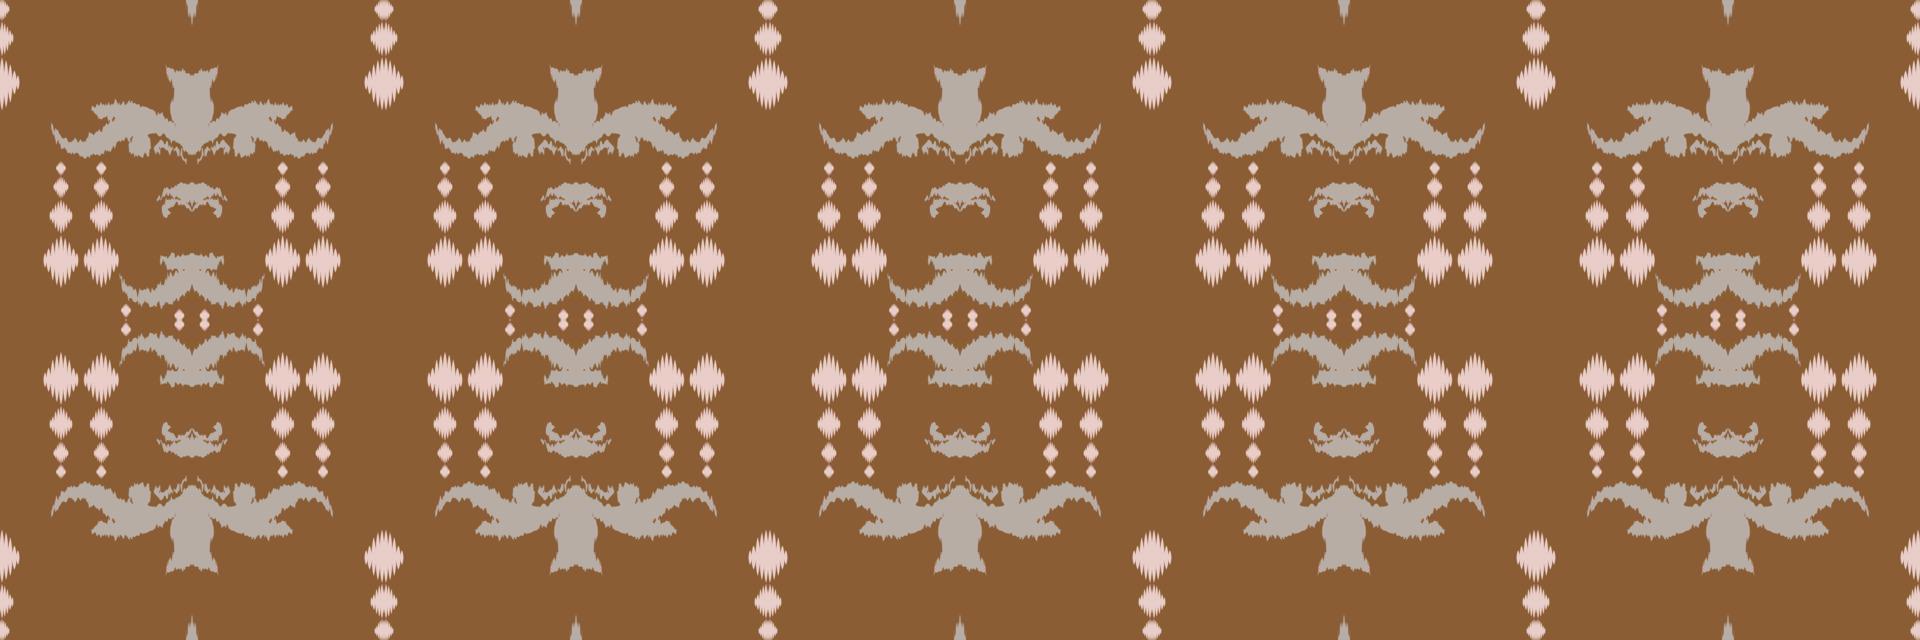 ikkat ou ikat diamante batik têxtil padrão sem costura design de vetor digital para impressão saree kurti borneo tecido borda escova símbolos amostras roupas de festa